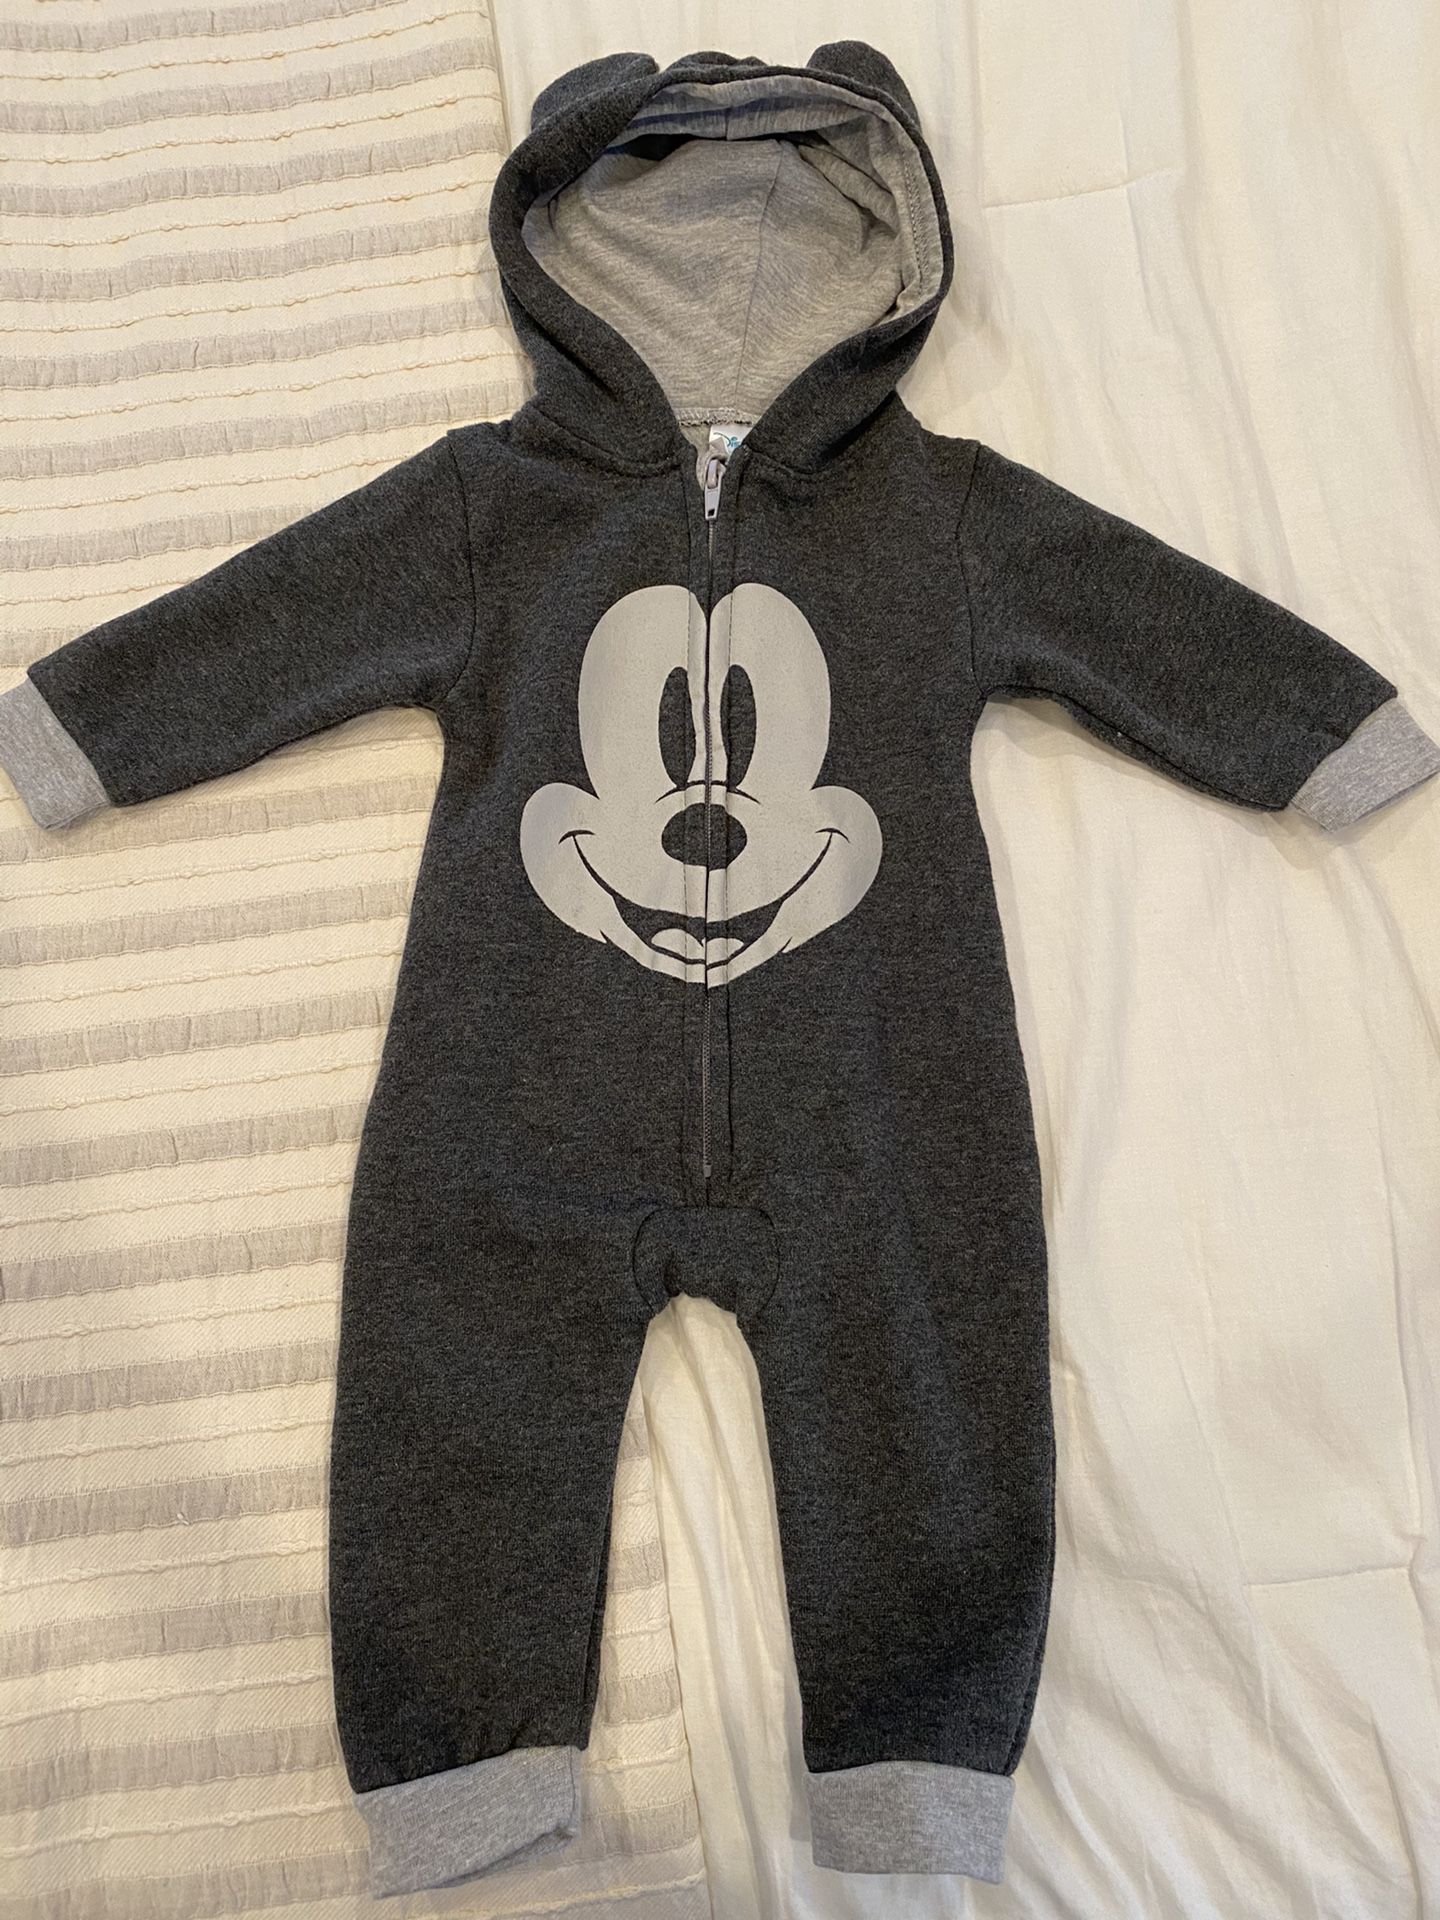 Disney Baby Mickey 6/9 months Onesie